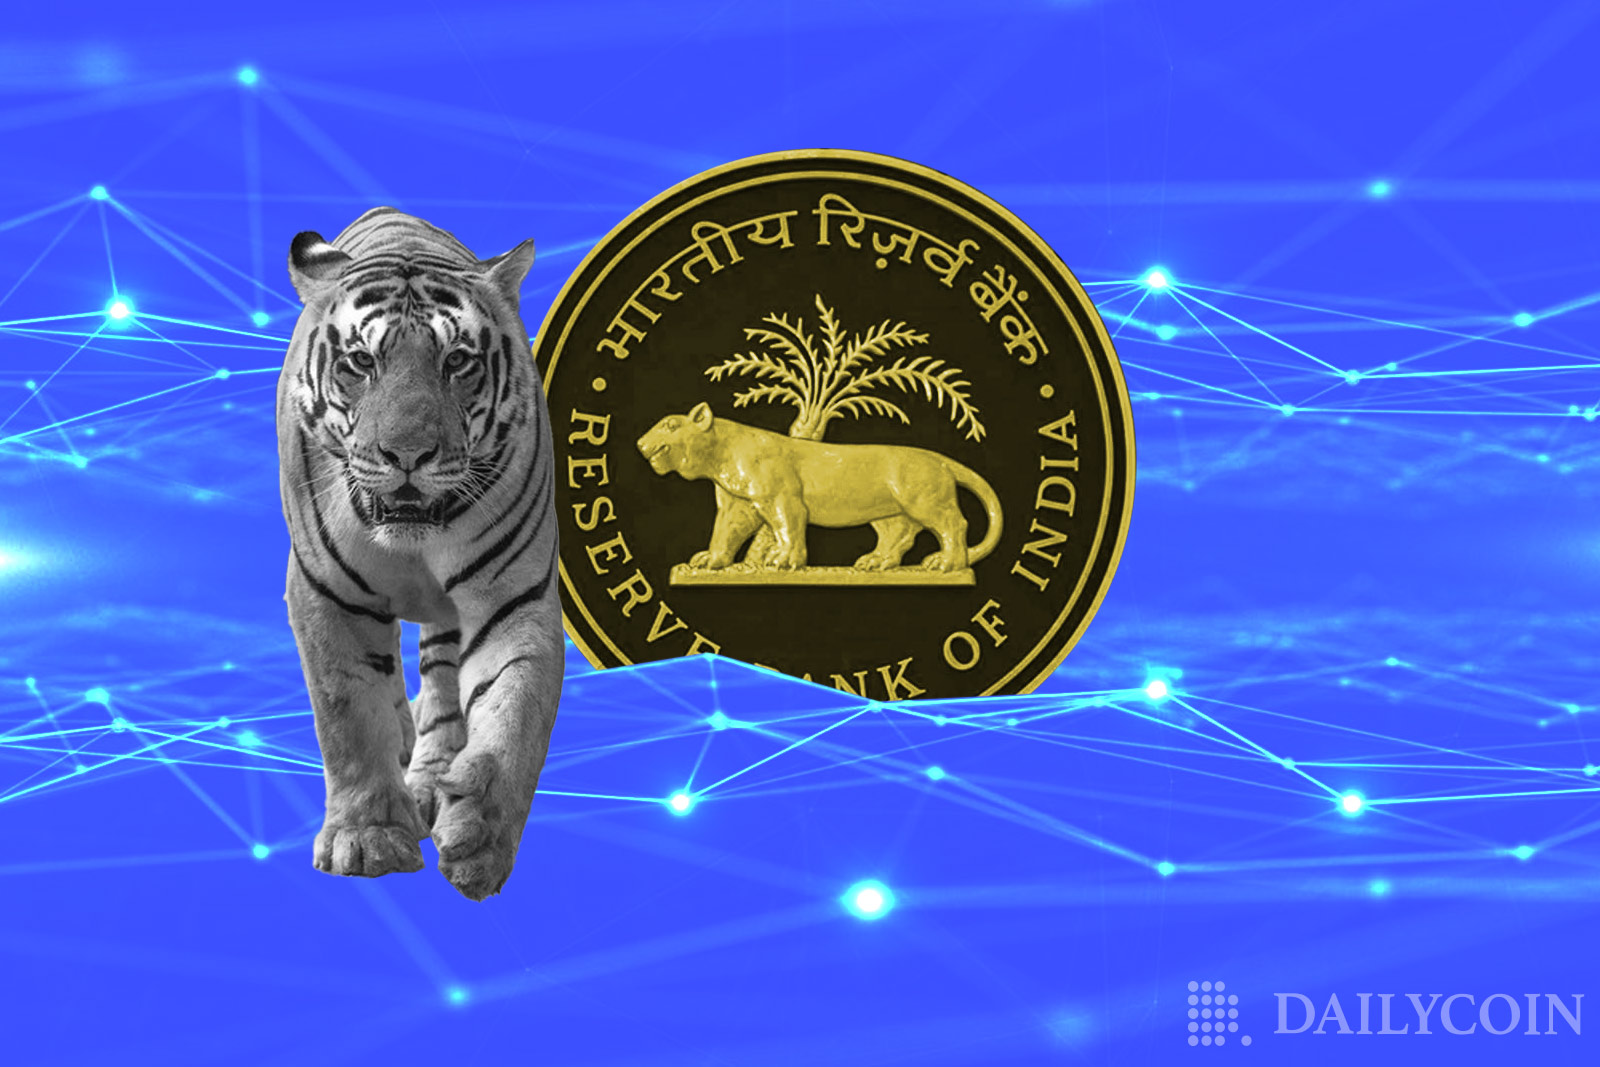 India's-Central-Bank-Kickstarts-CBDC-Pilot-With-Four-Banks